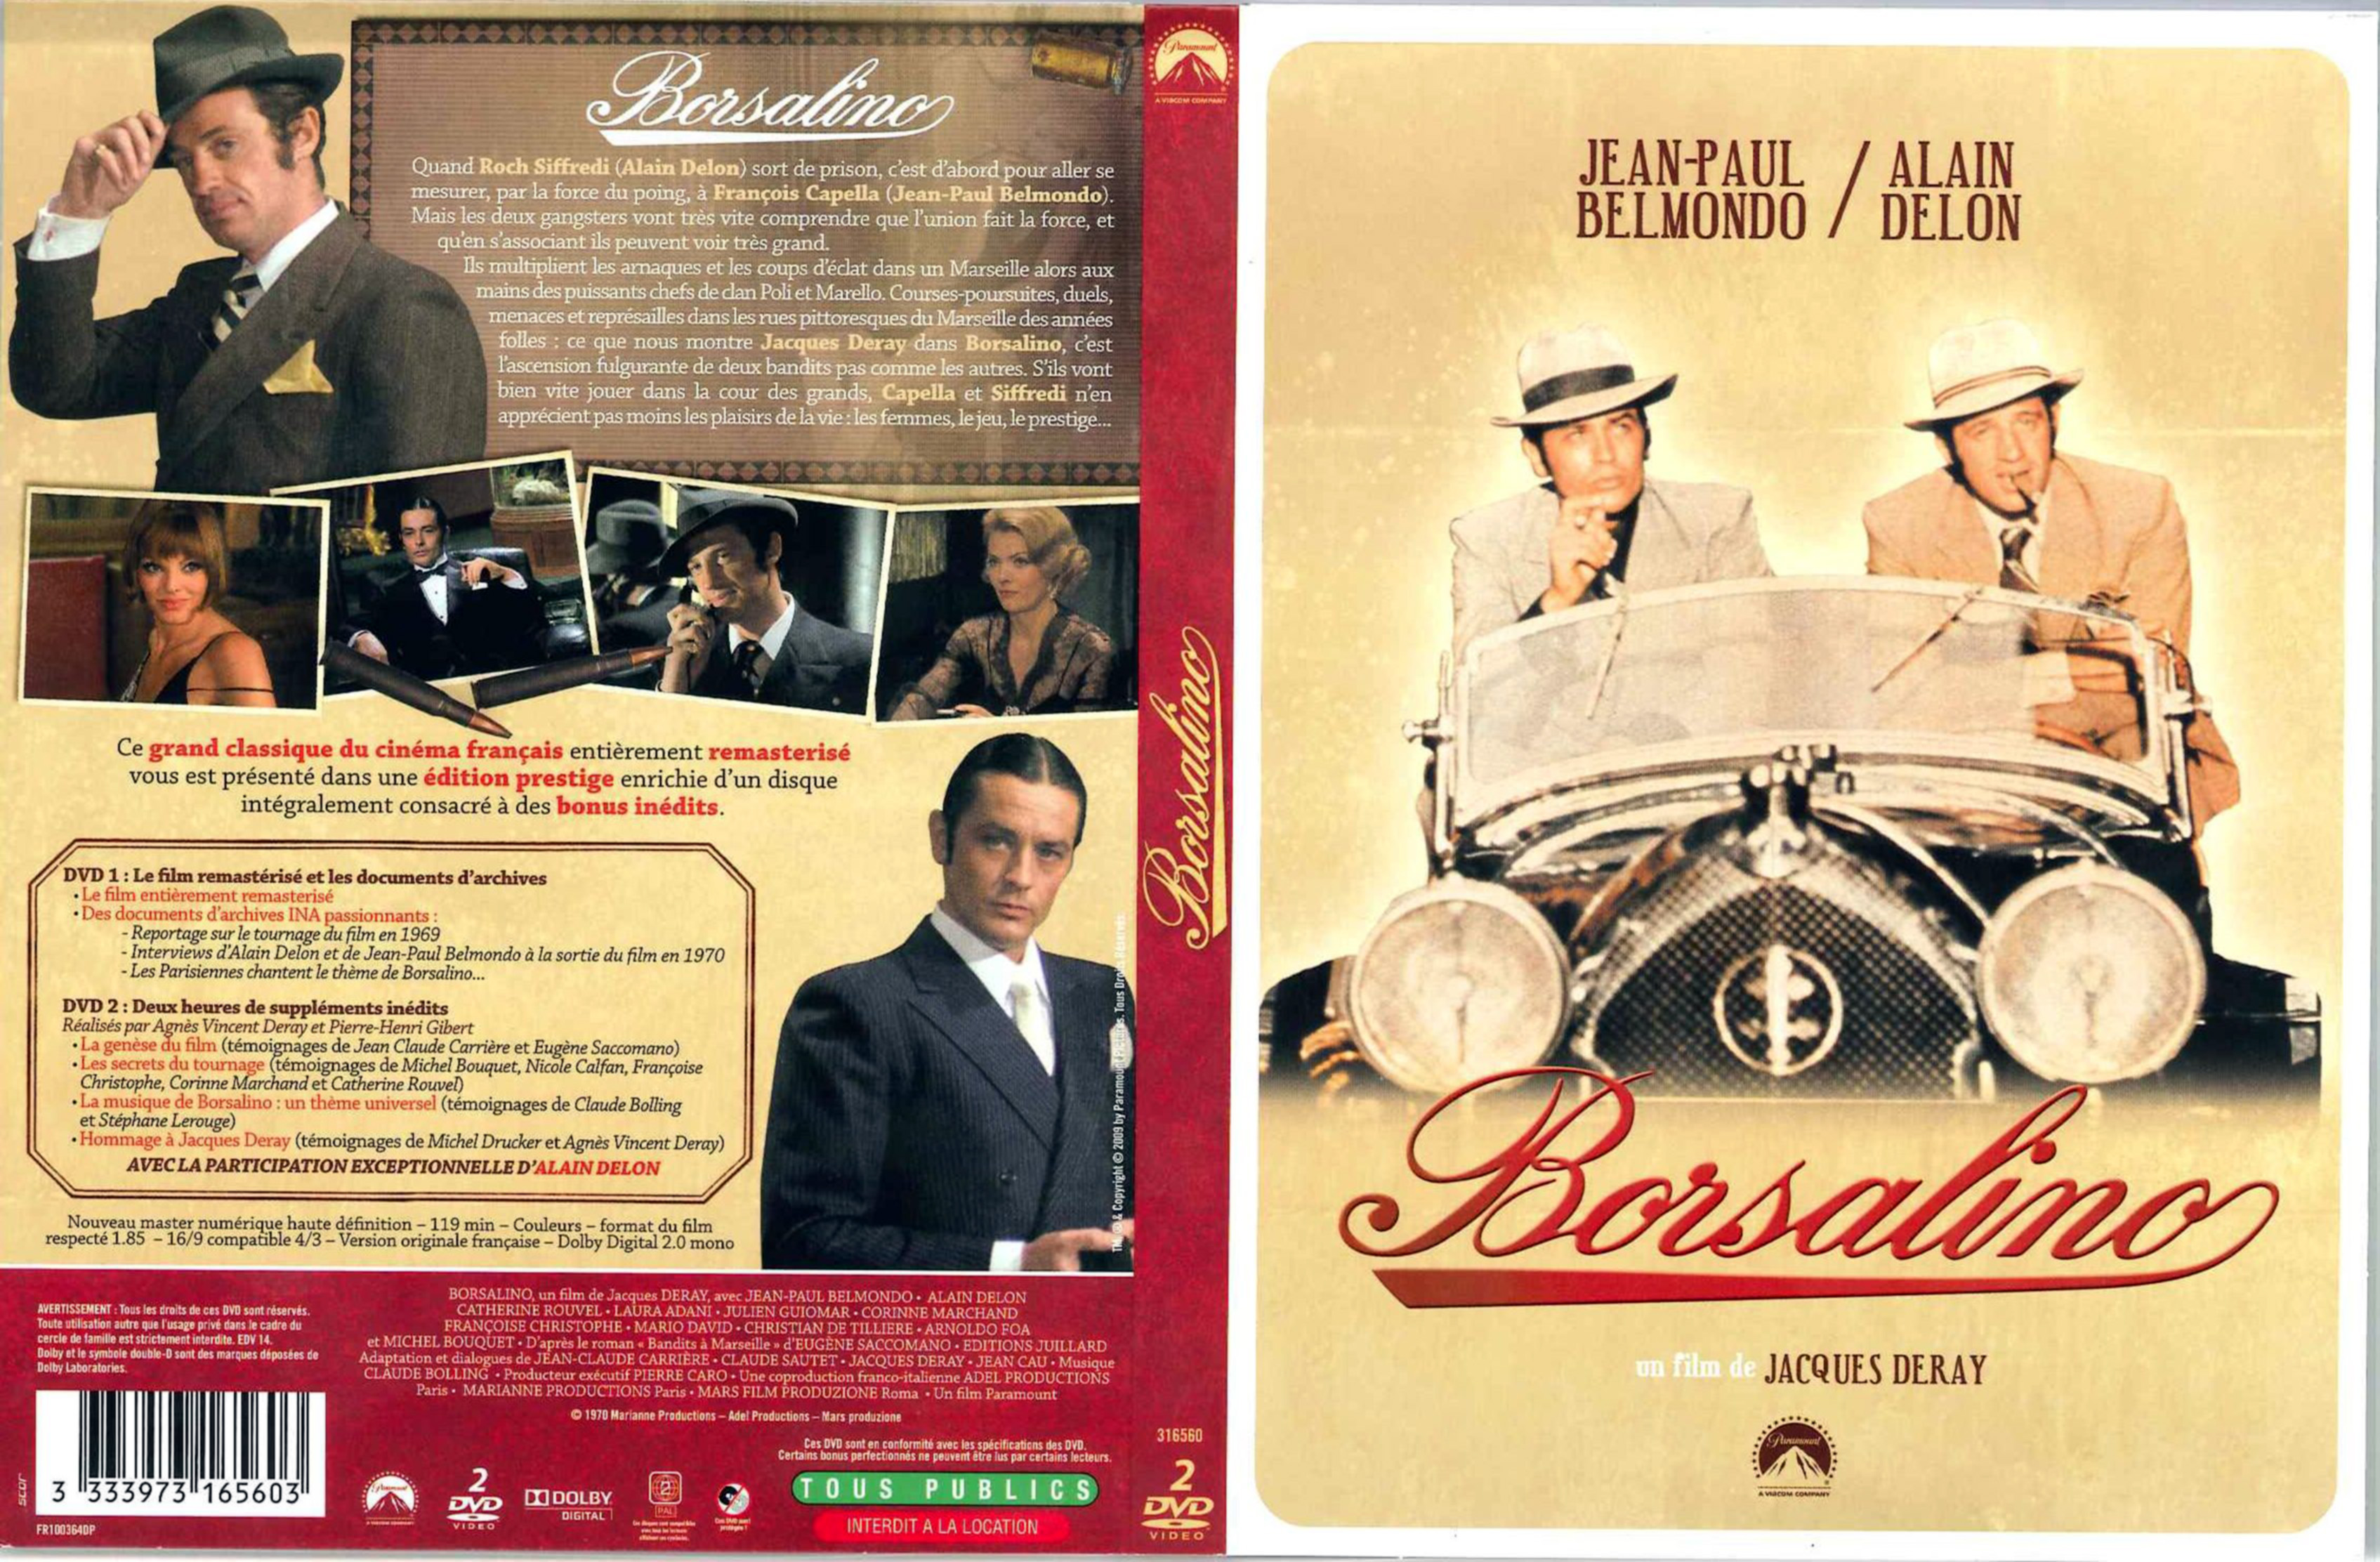 Jaquette DVD Borsalino